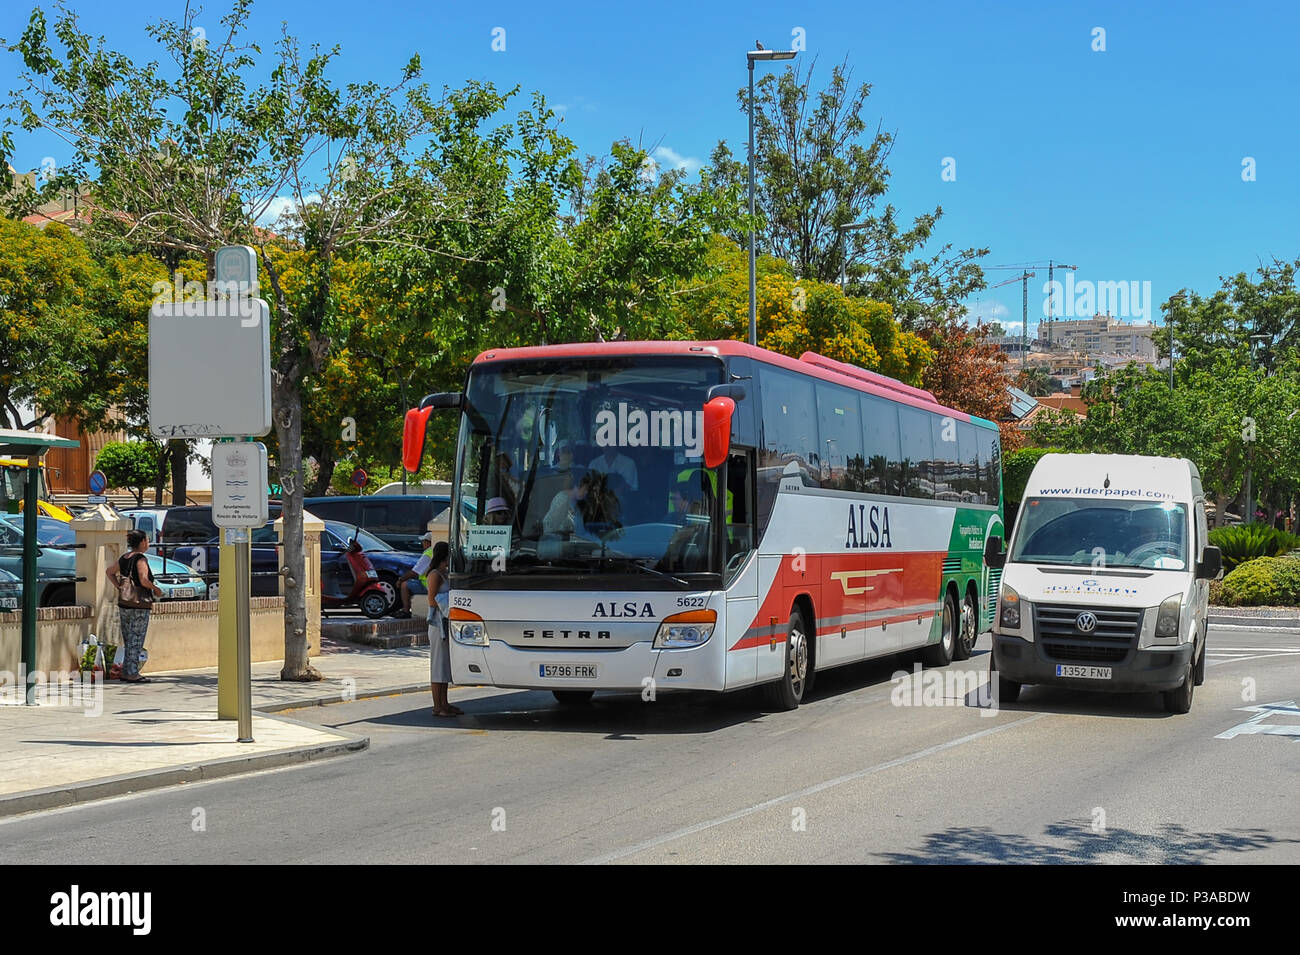 En bus/autocar s'arrête pour prendre des passagers dans la région de Rincon de la Victoria, en direction de Malaga, Costa del Sol, Espagne. Banque D'Images